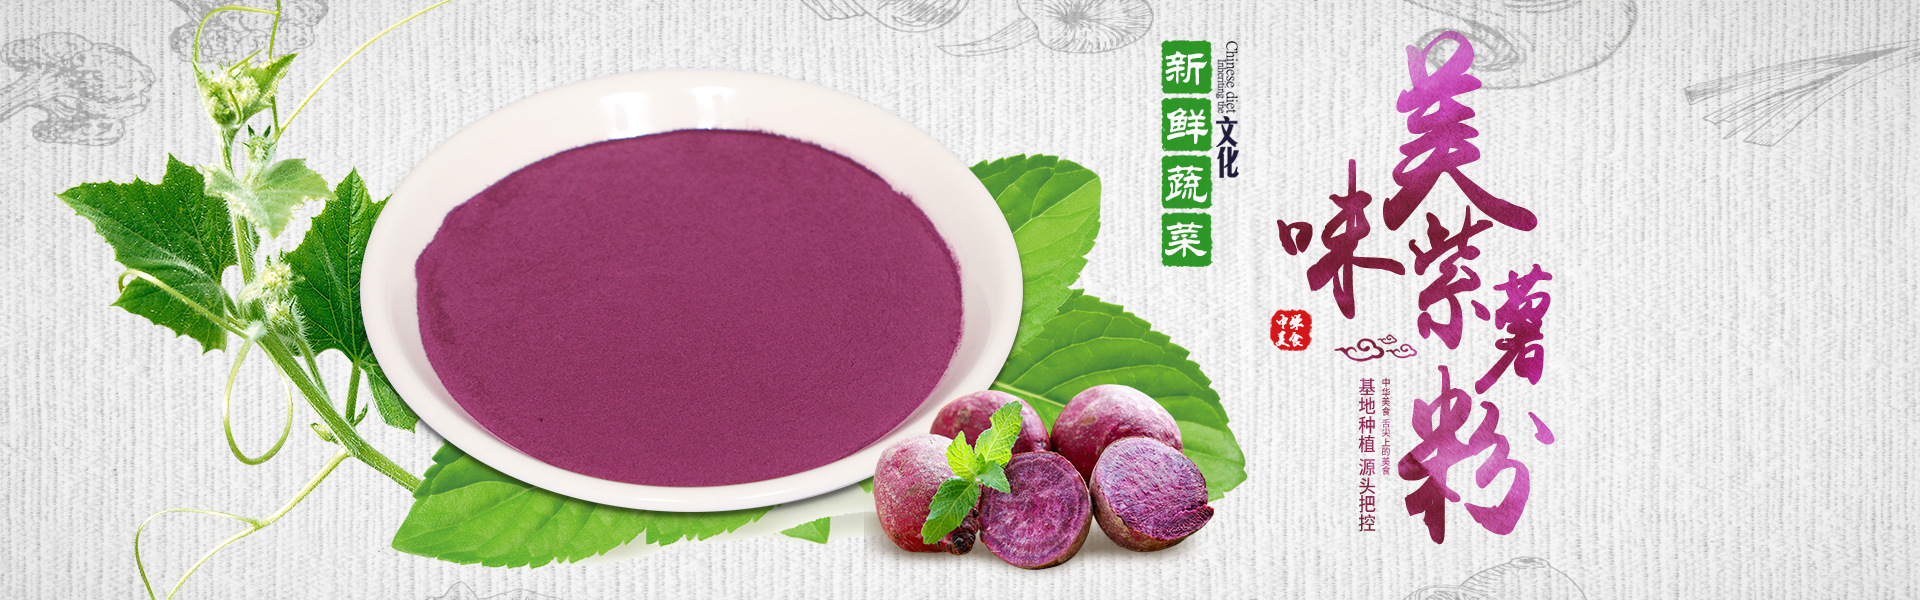 紫薯粉-海报.jpg